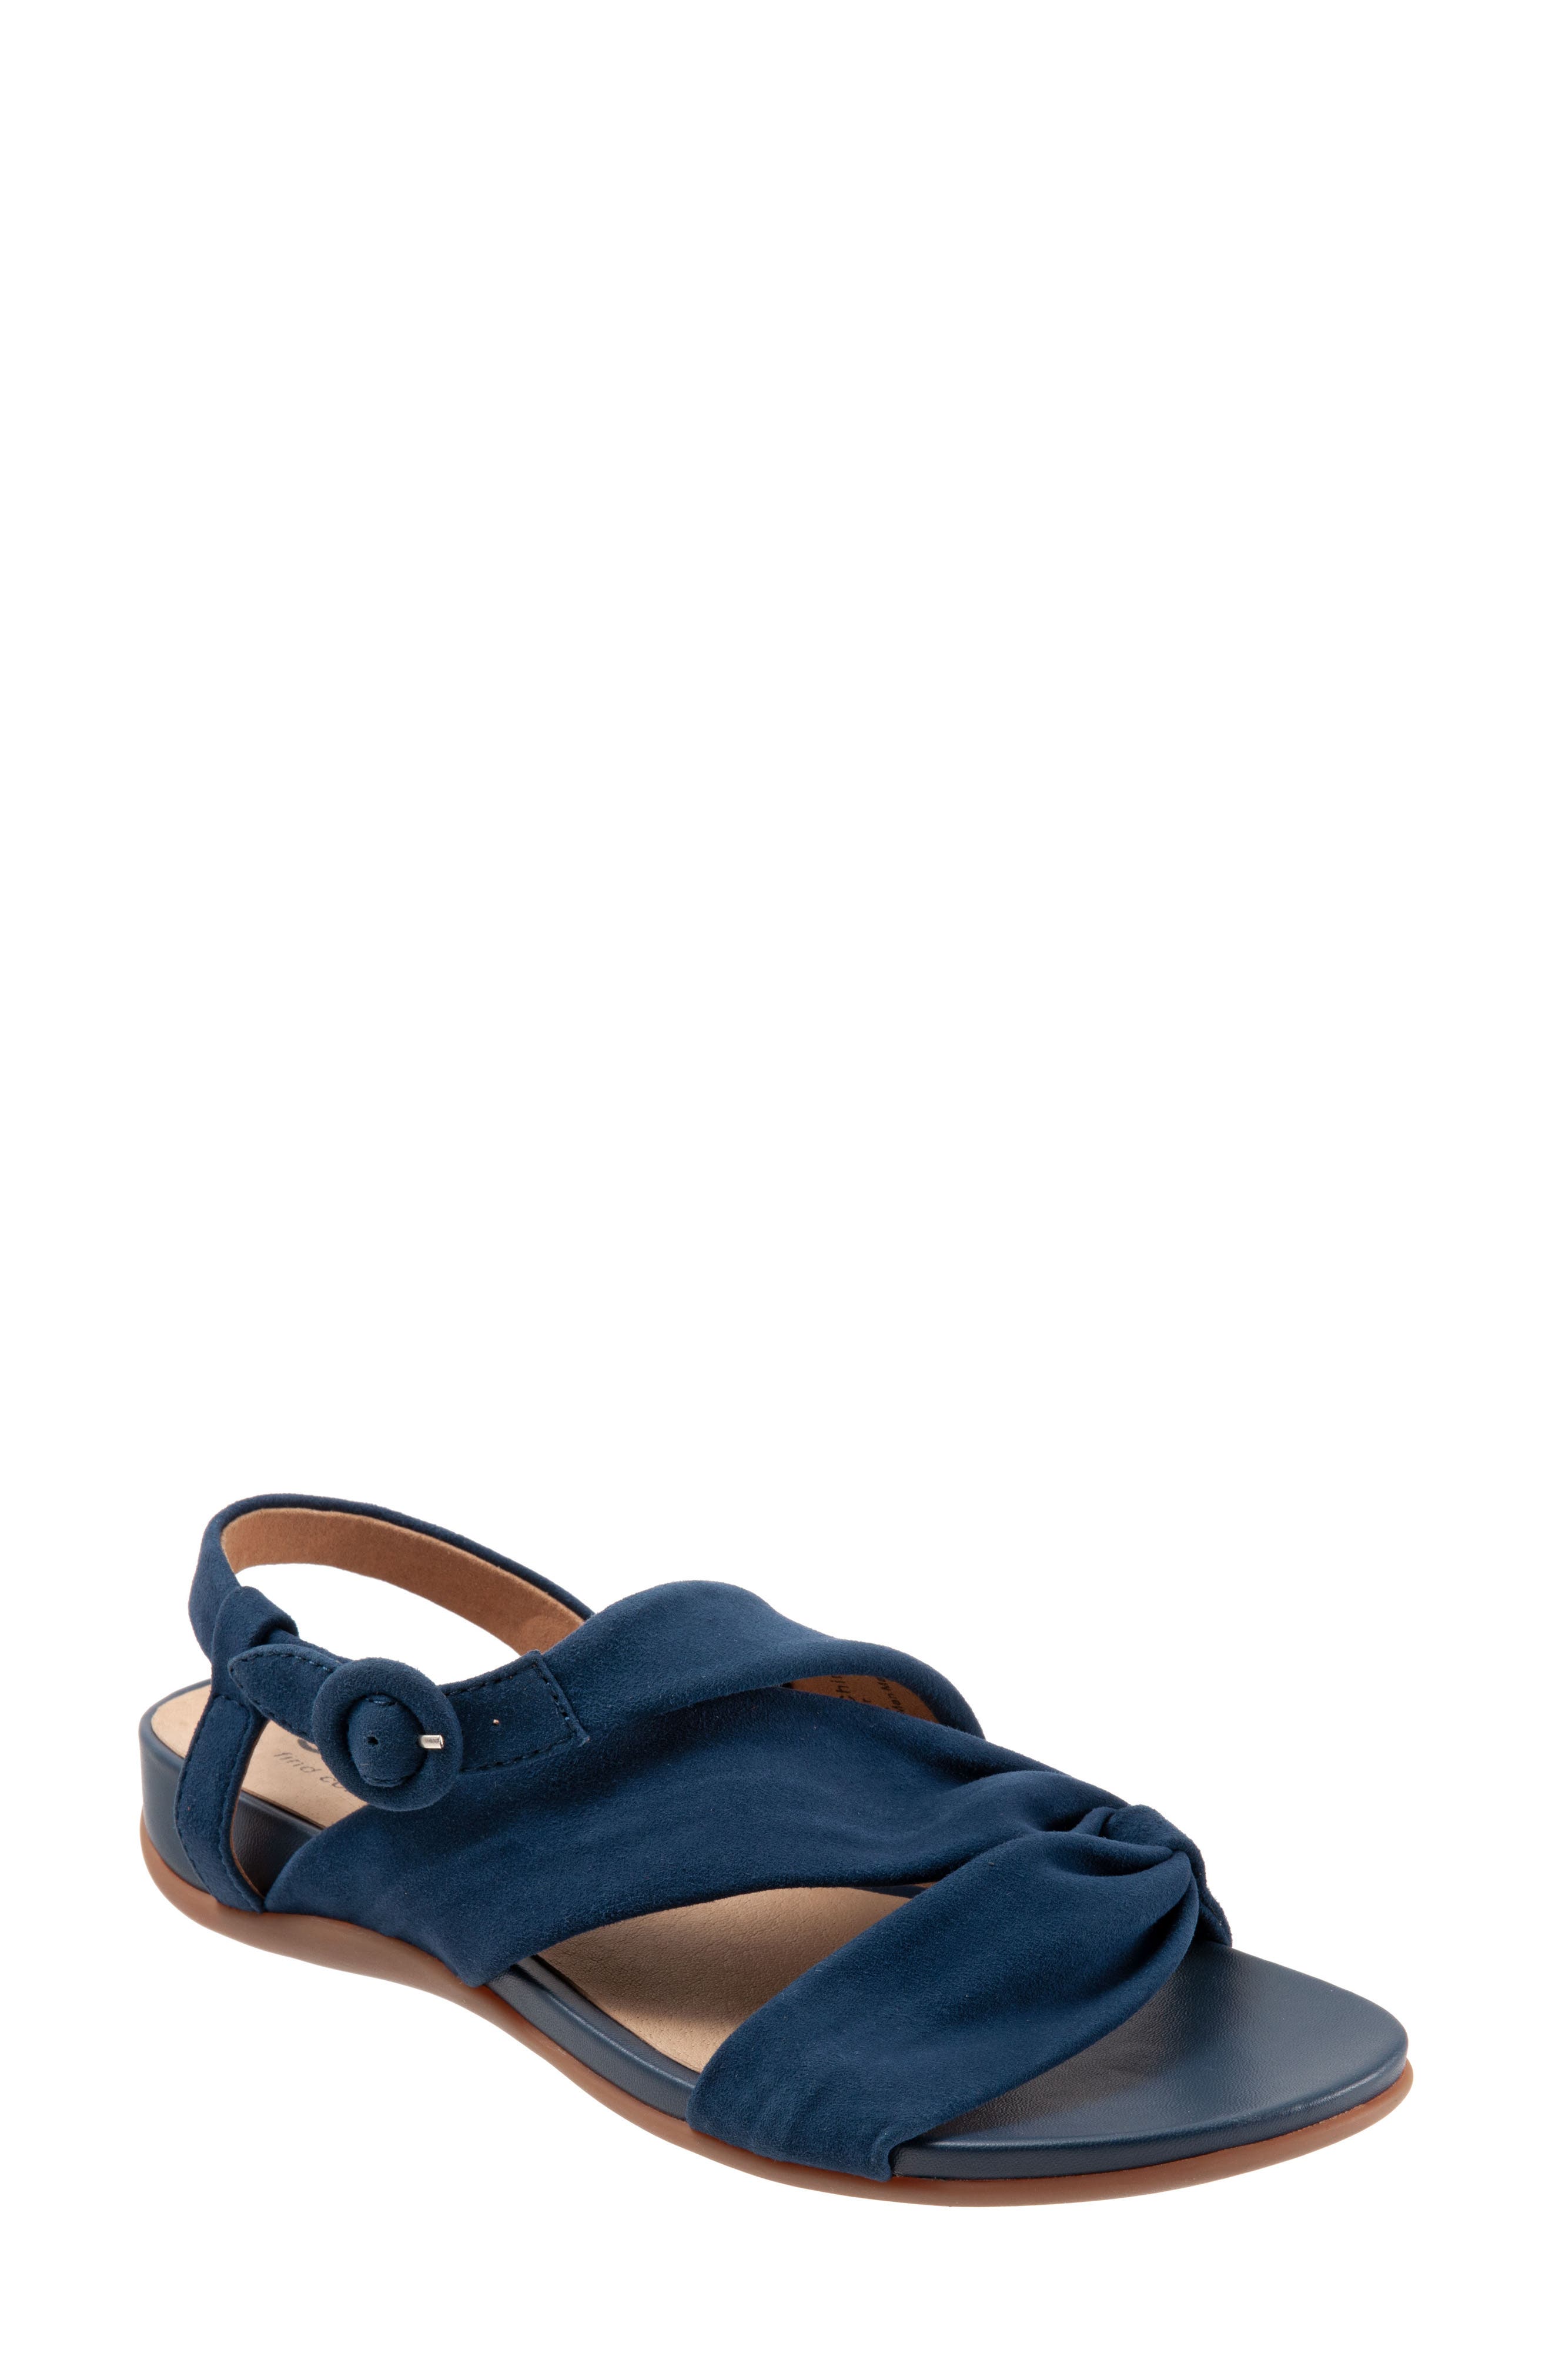 navy blue sandals | Nordstrom